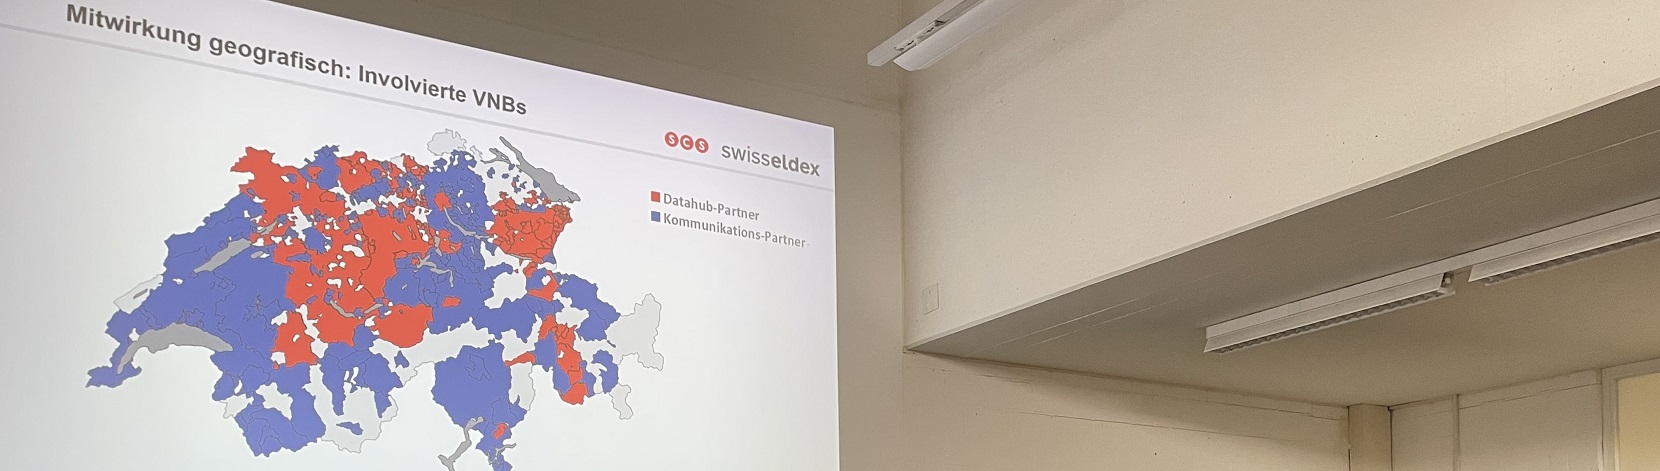 Swisseldex Datahub: Technische Branchenlösung etabliert sich – Electrosuisse